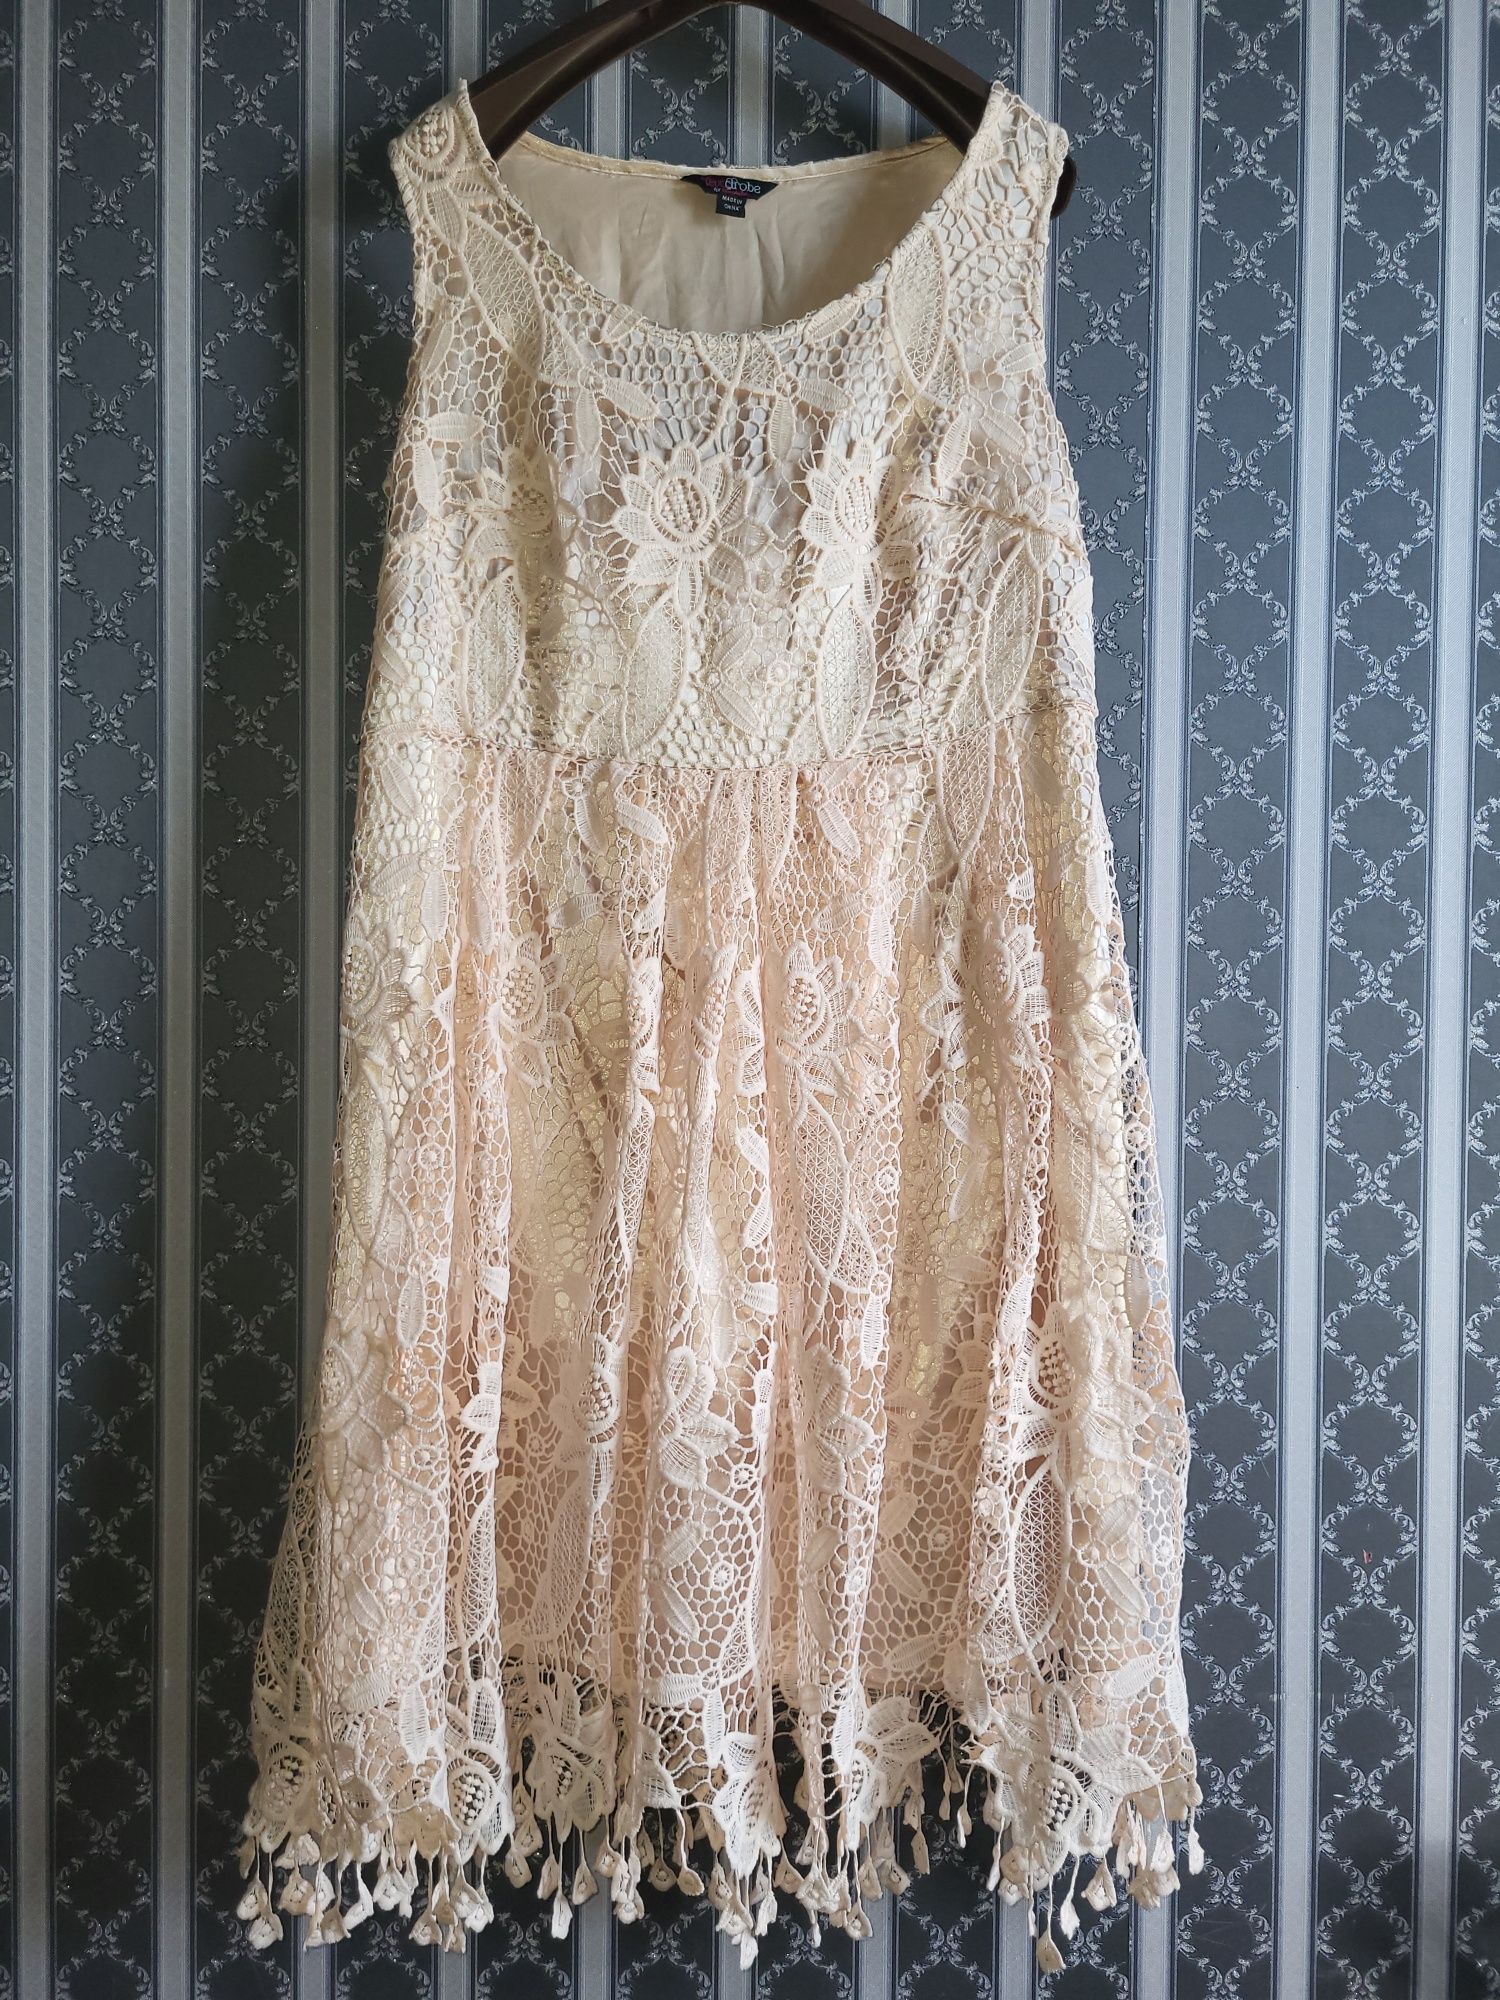 Вышитое кружевное платье 50- 52р нежное персиковое